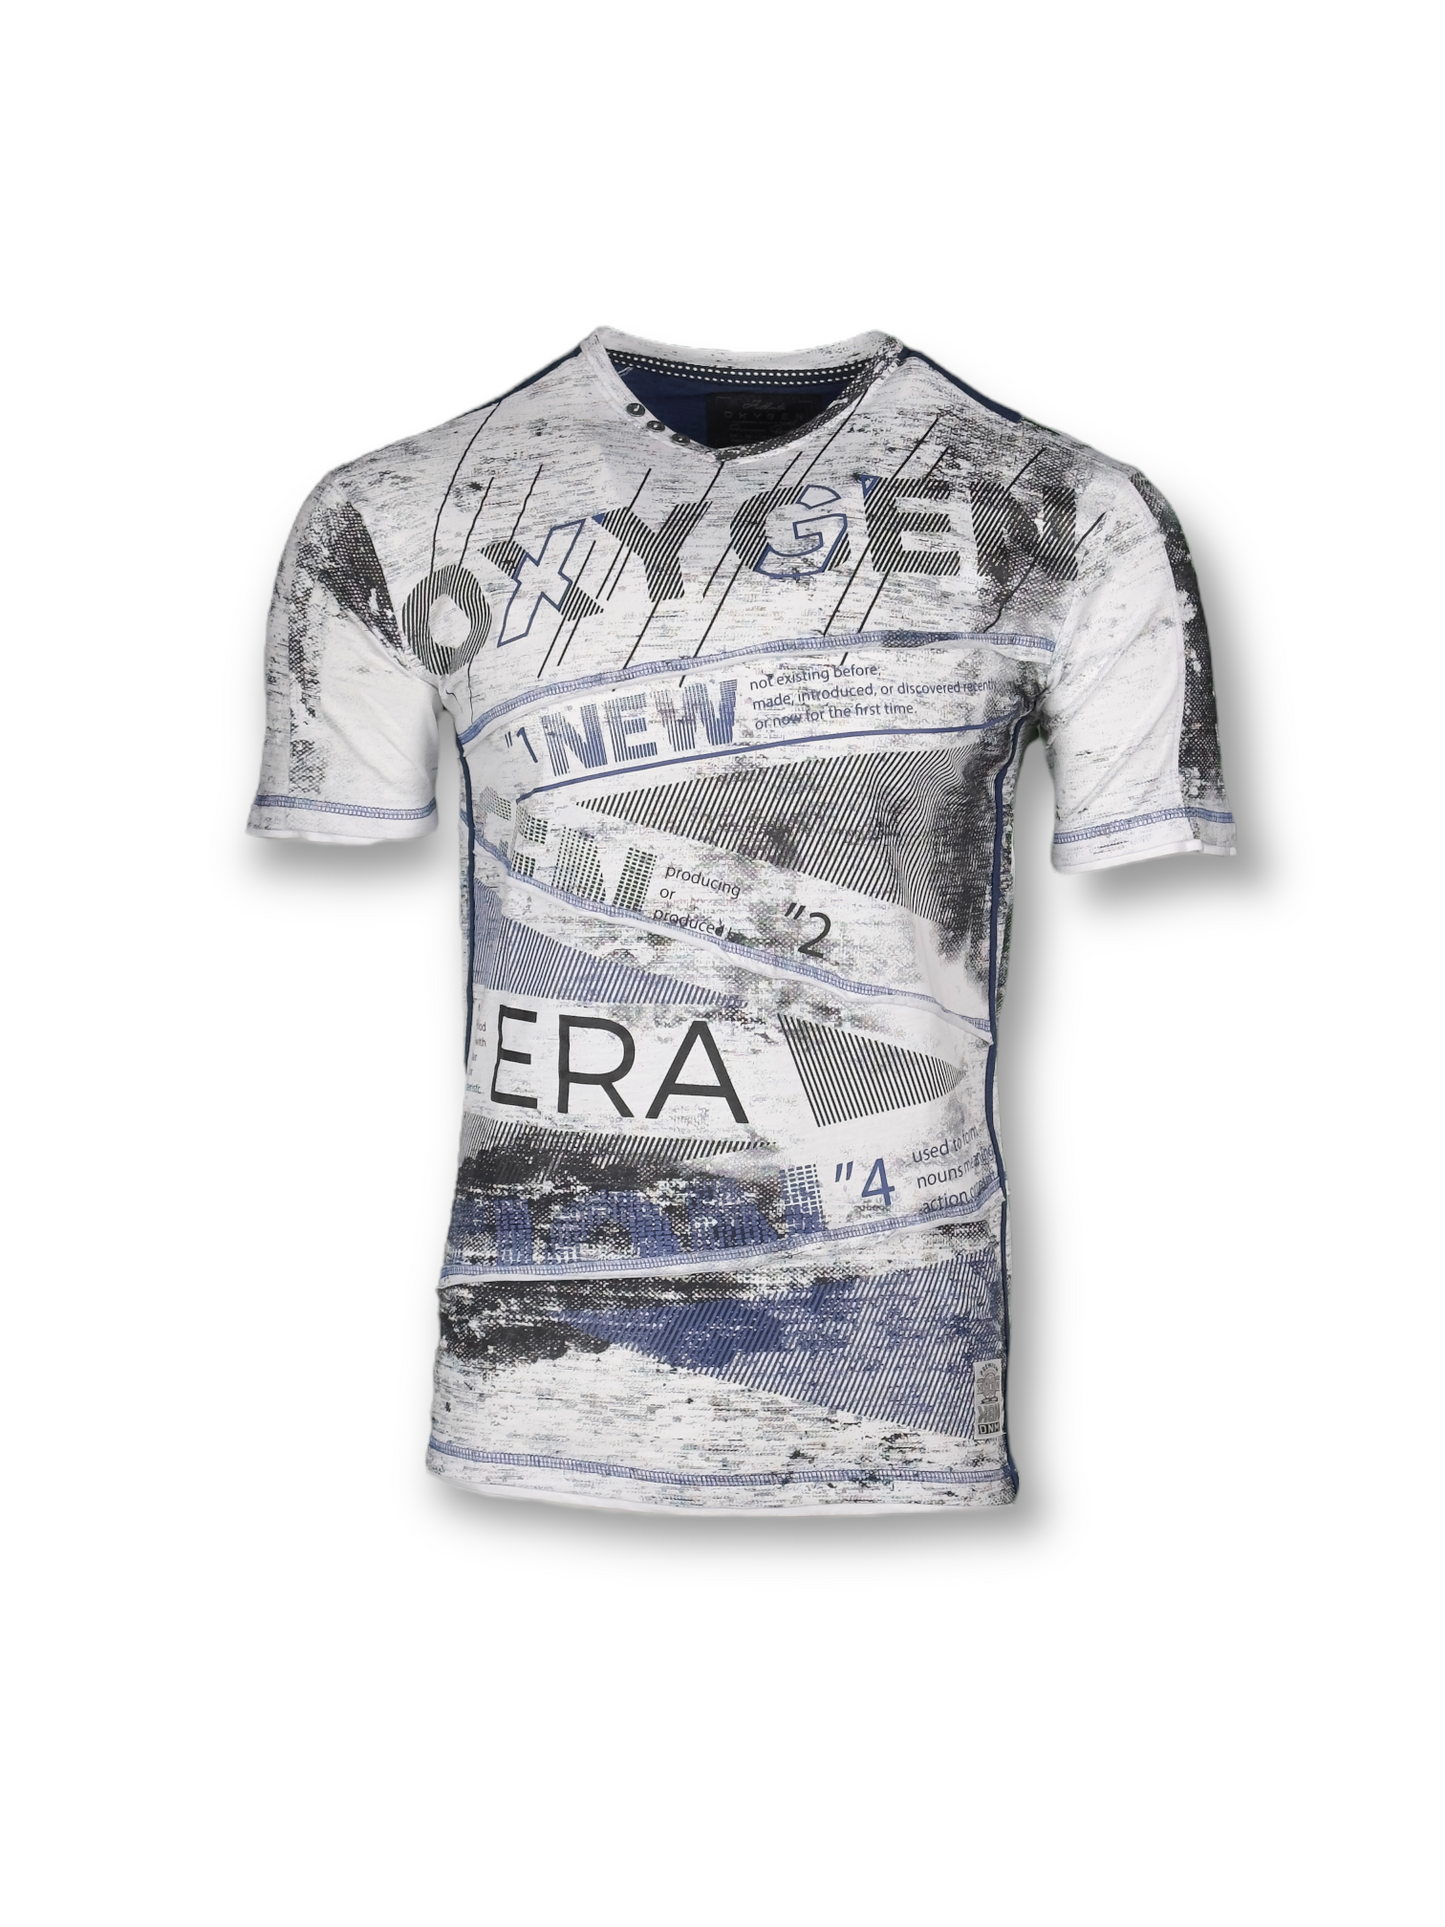 Oxygen gray t-shirt for men